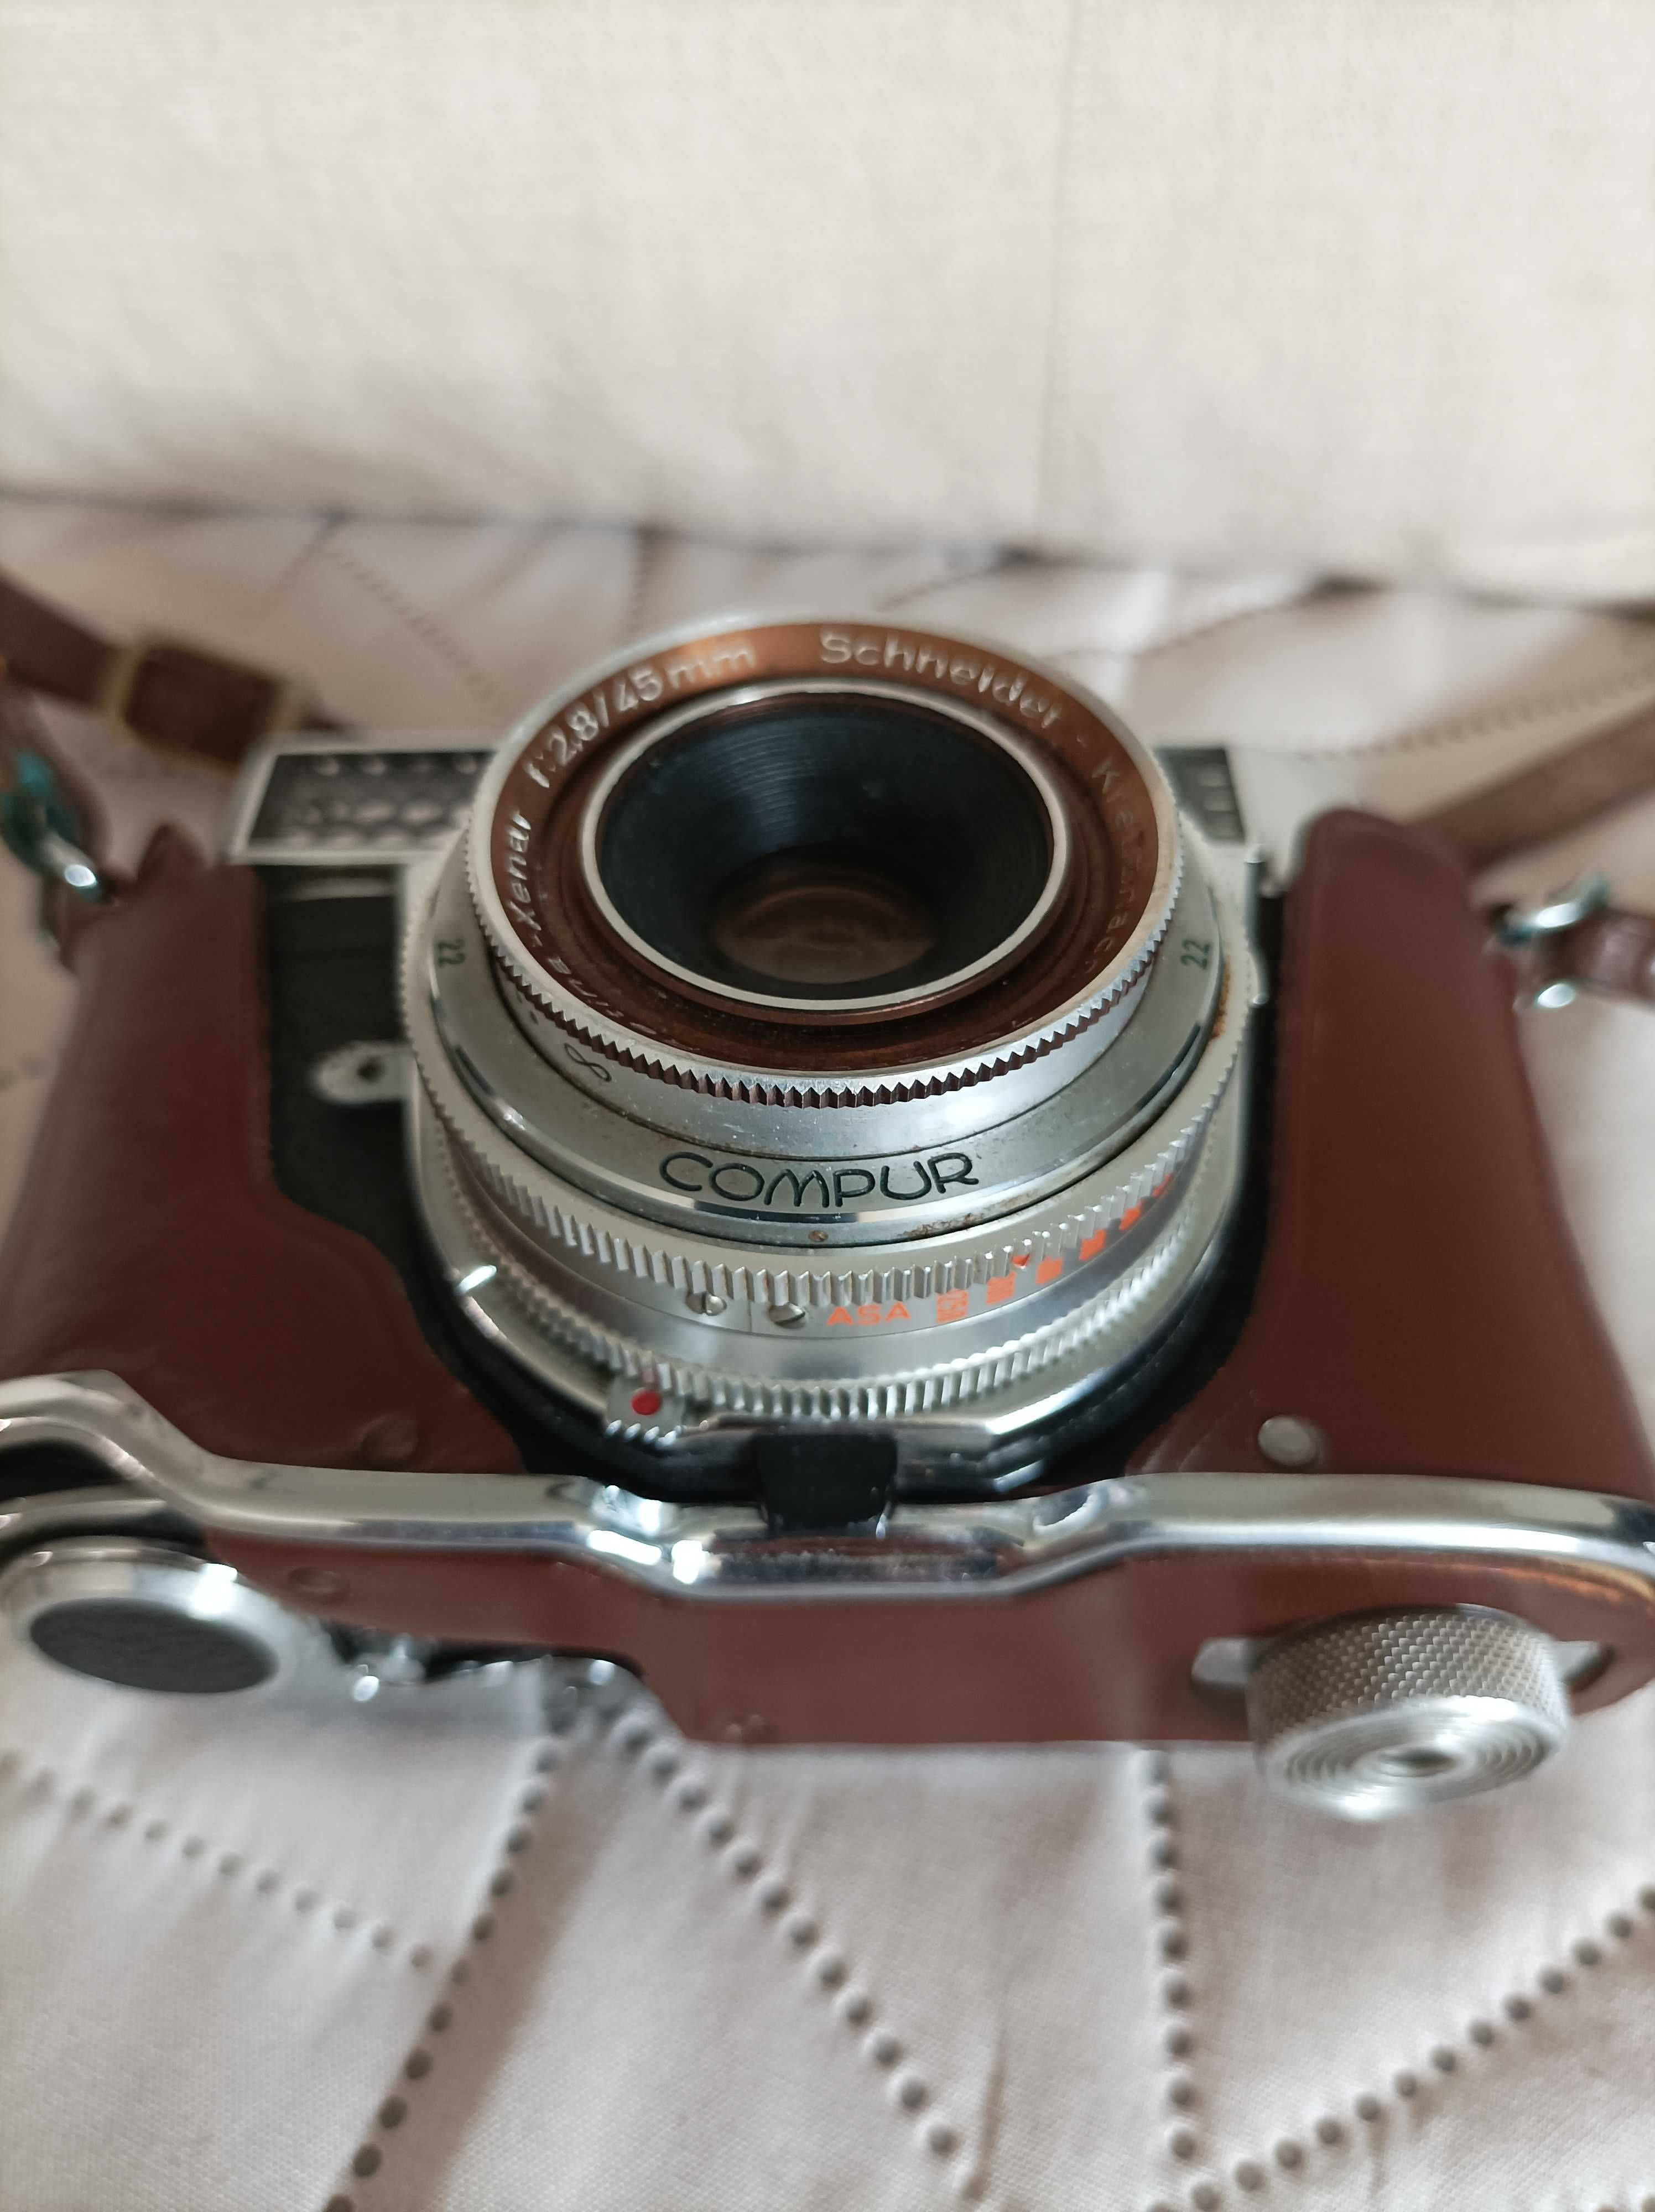 Kodak Retina IBS aparat retro vintage